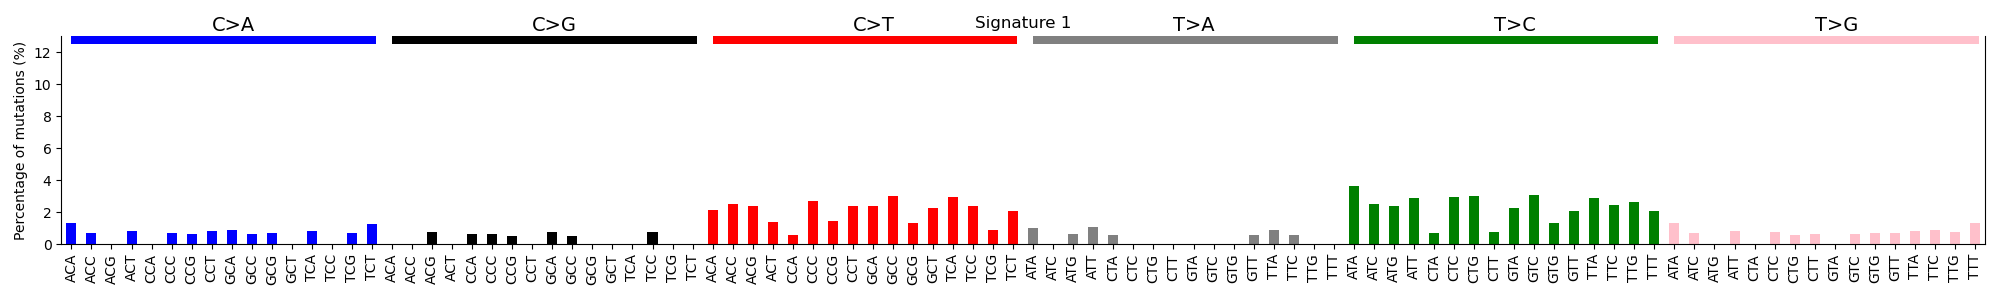 Fig9. Signature 1